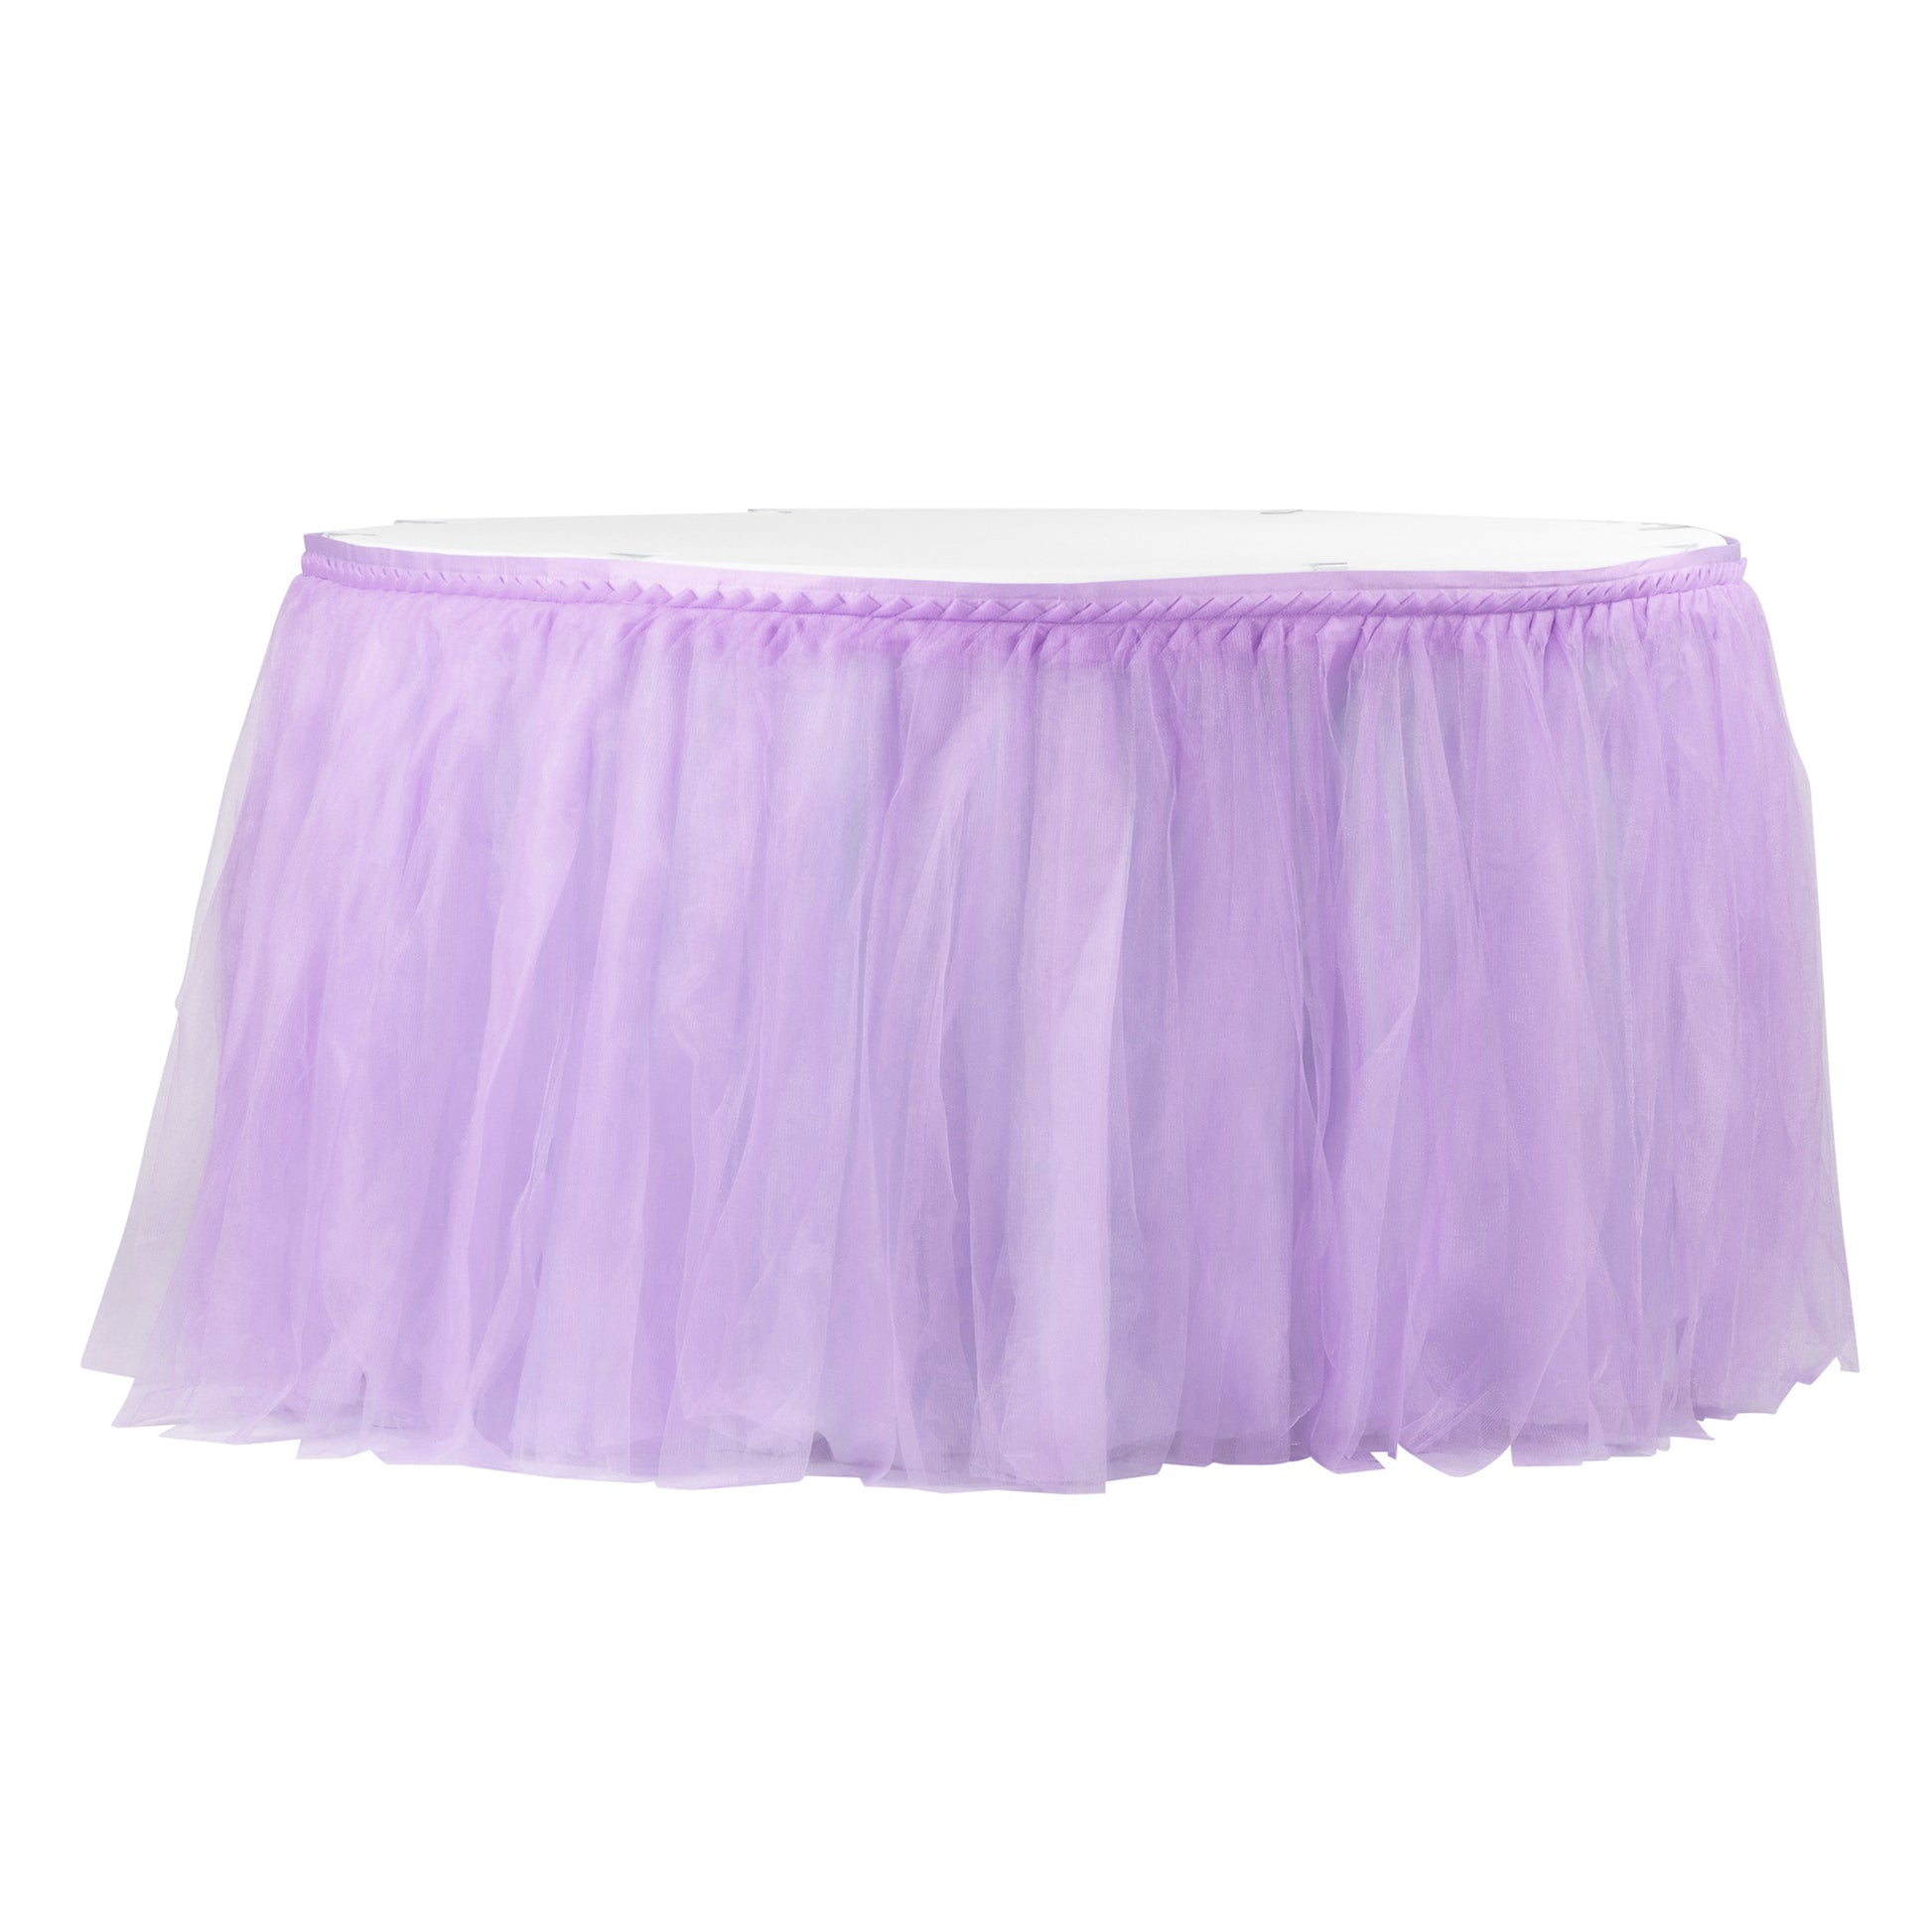 Tulle Tutu 17ft Table Skirt - Lavender - CV Linens